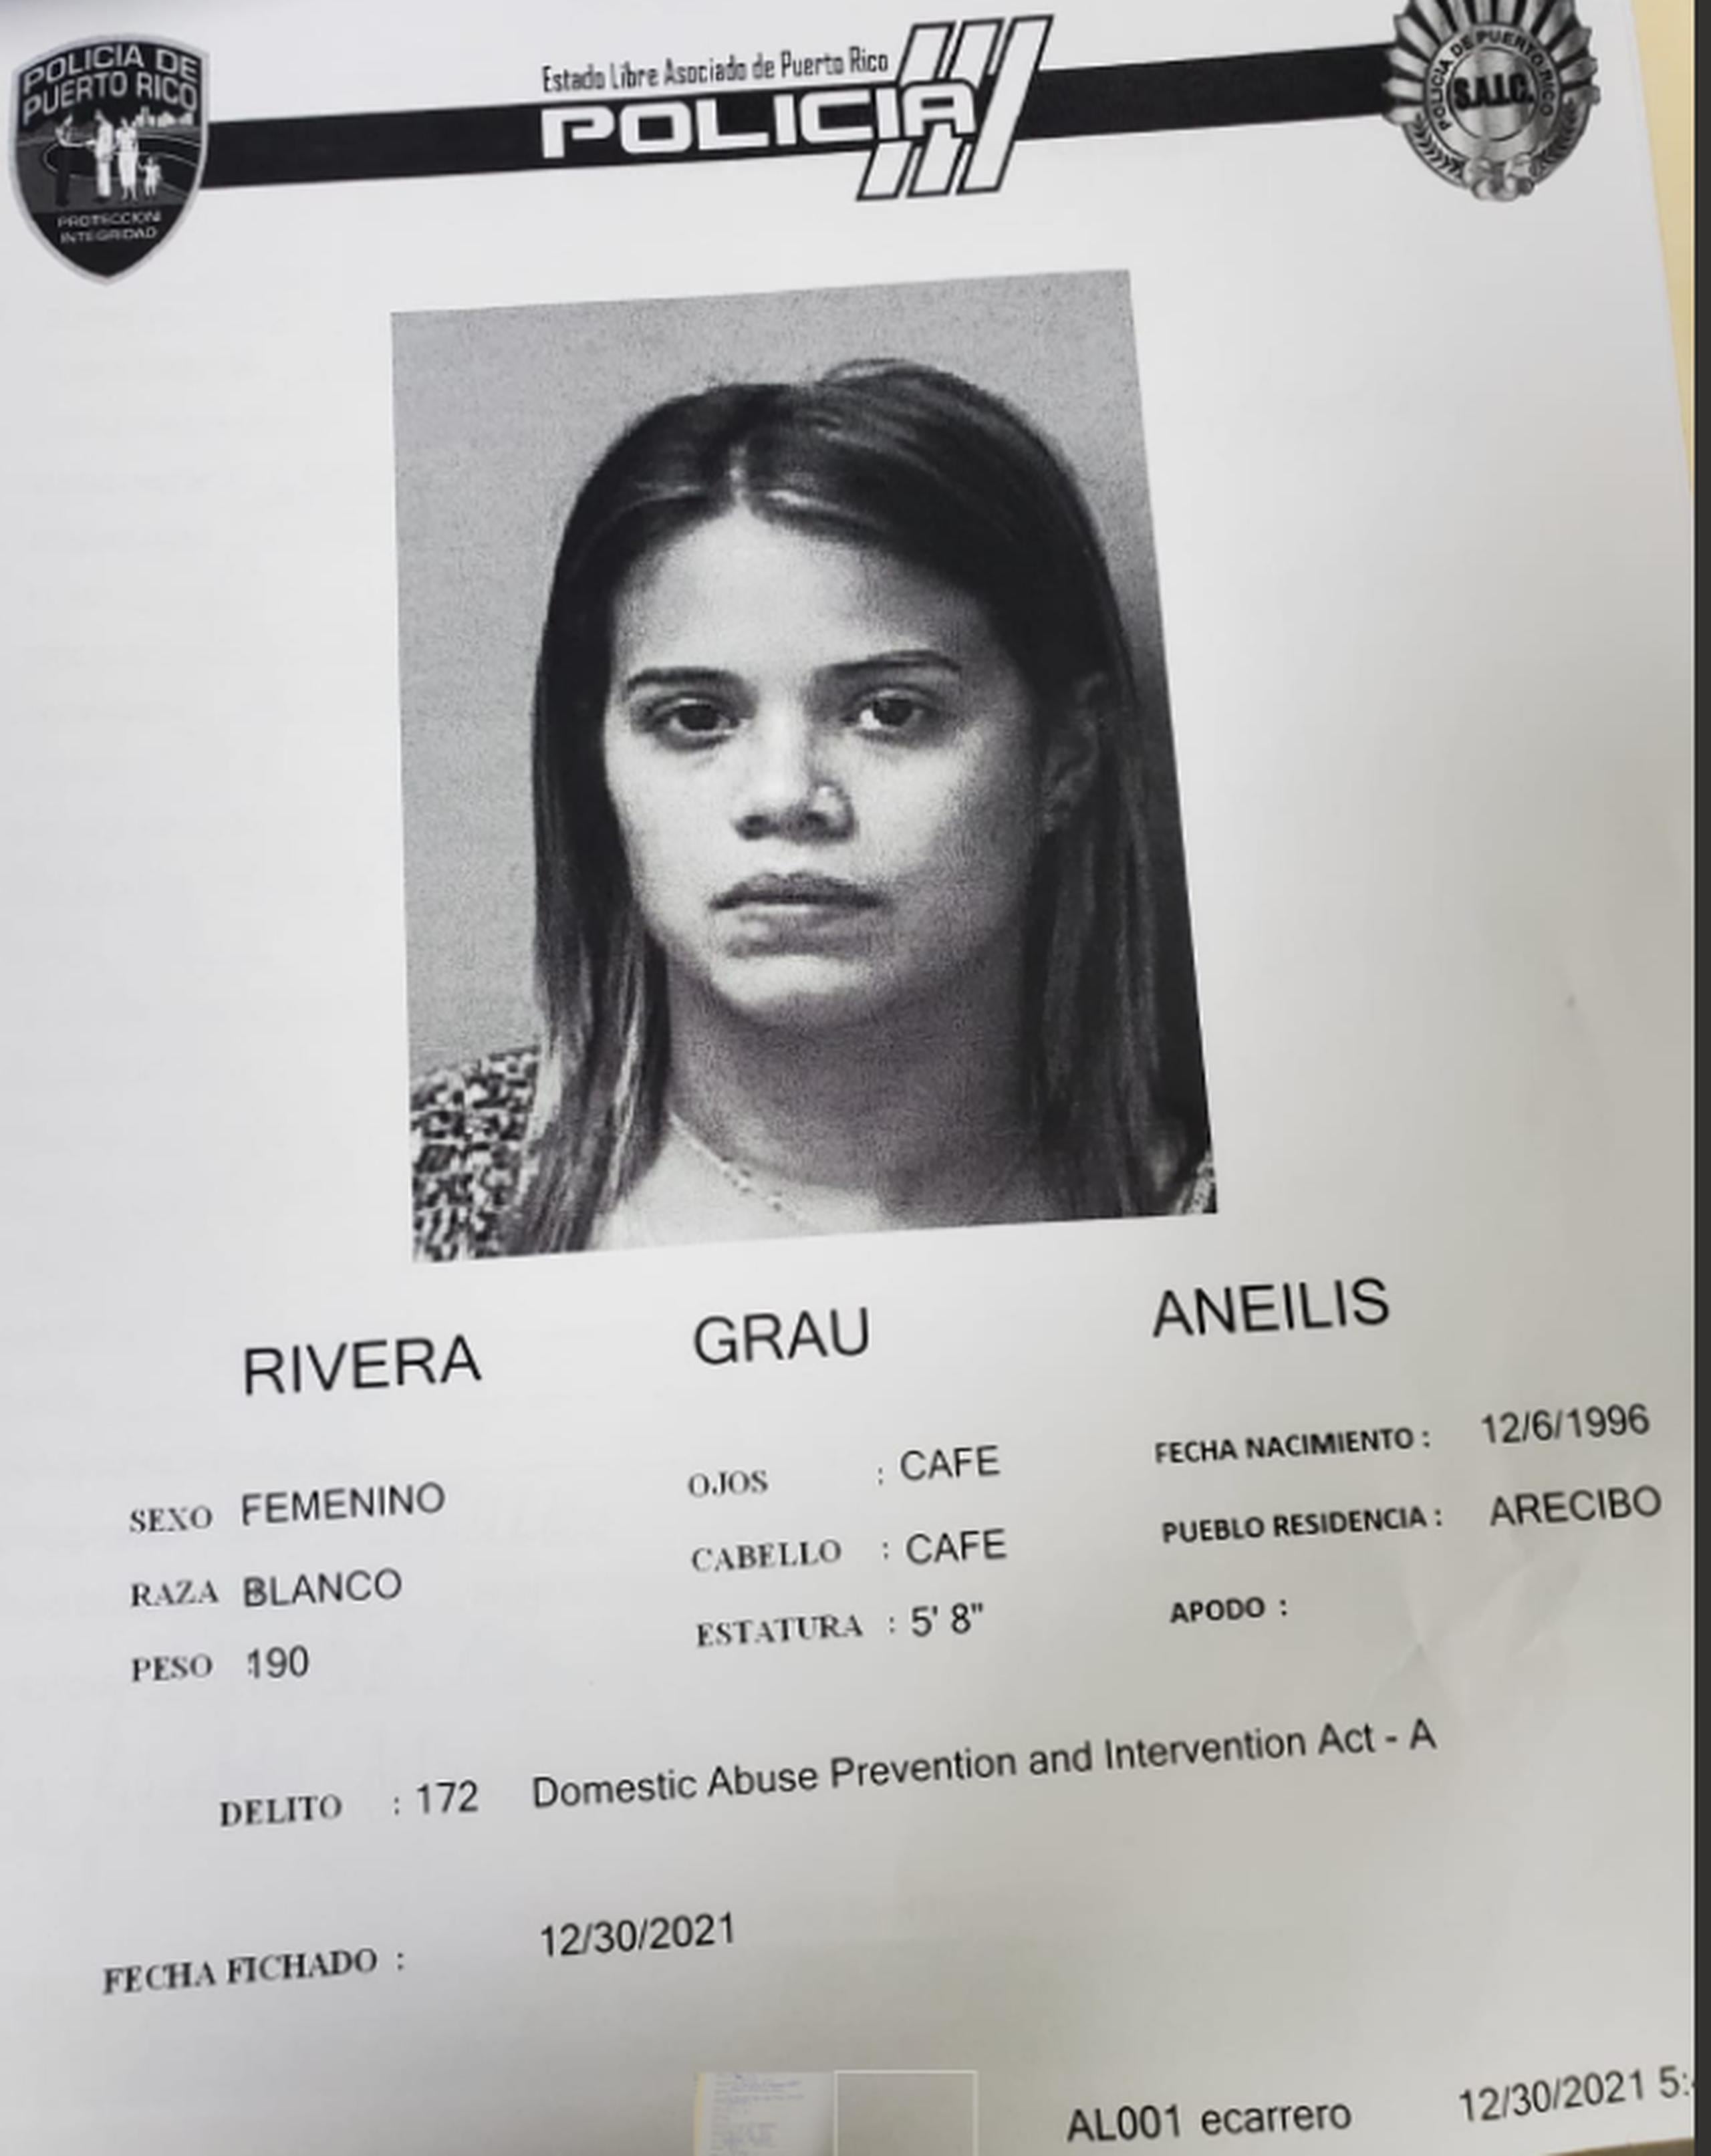 Ficha policial de Aneilis Rivera Grau, imputada de maltrato.